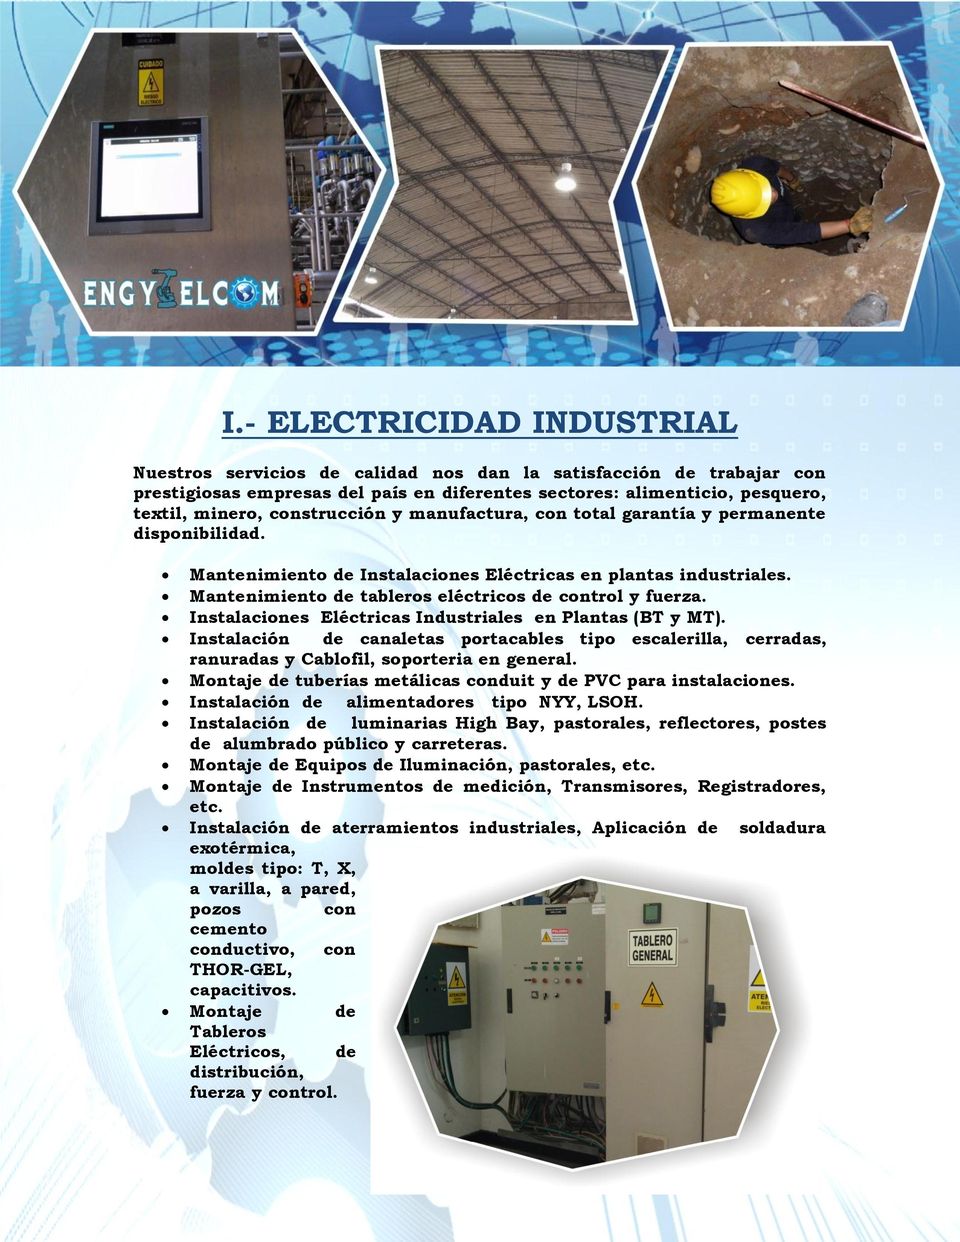 Instalaciones Eléctricas Industriales en Plantas (BT y MT). Instalación de canaletas portacables tipo escalerilla, cerradas, ranuradas y Cablofil, soporteria en general.